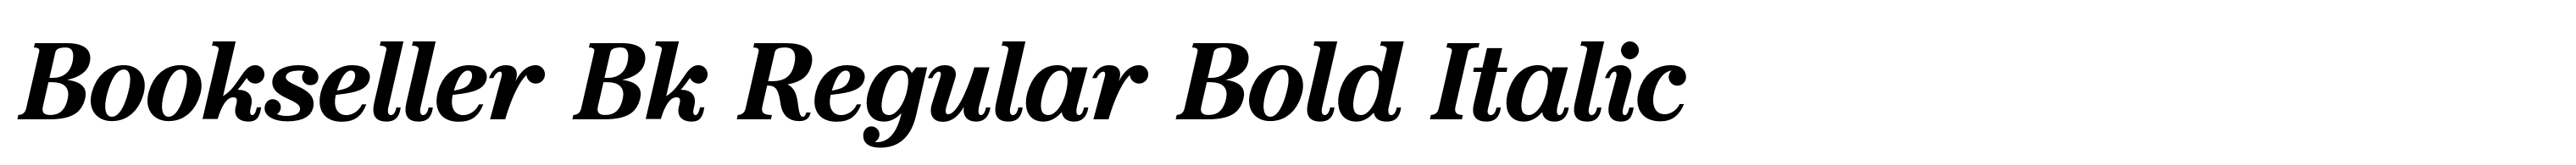 Bookseller Bk Regular Bold Italic